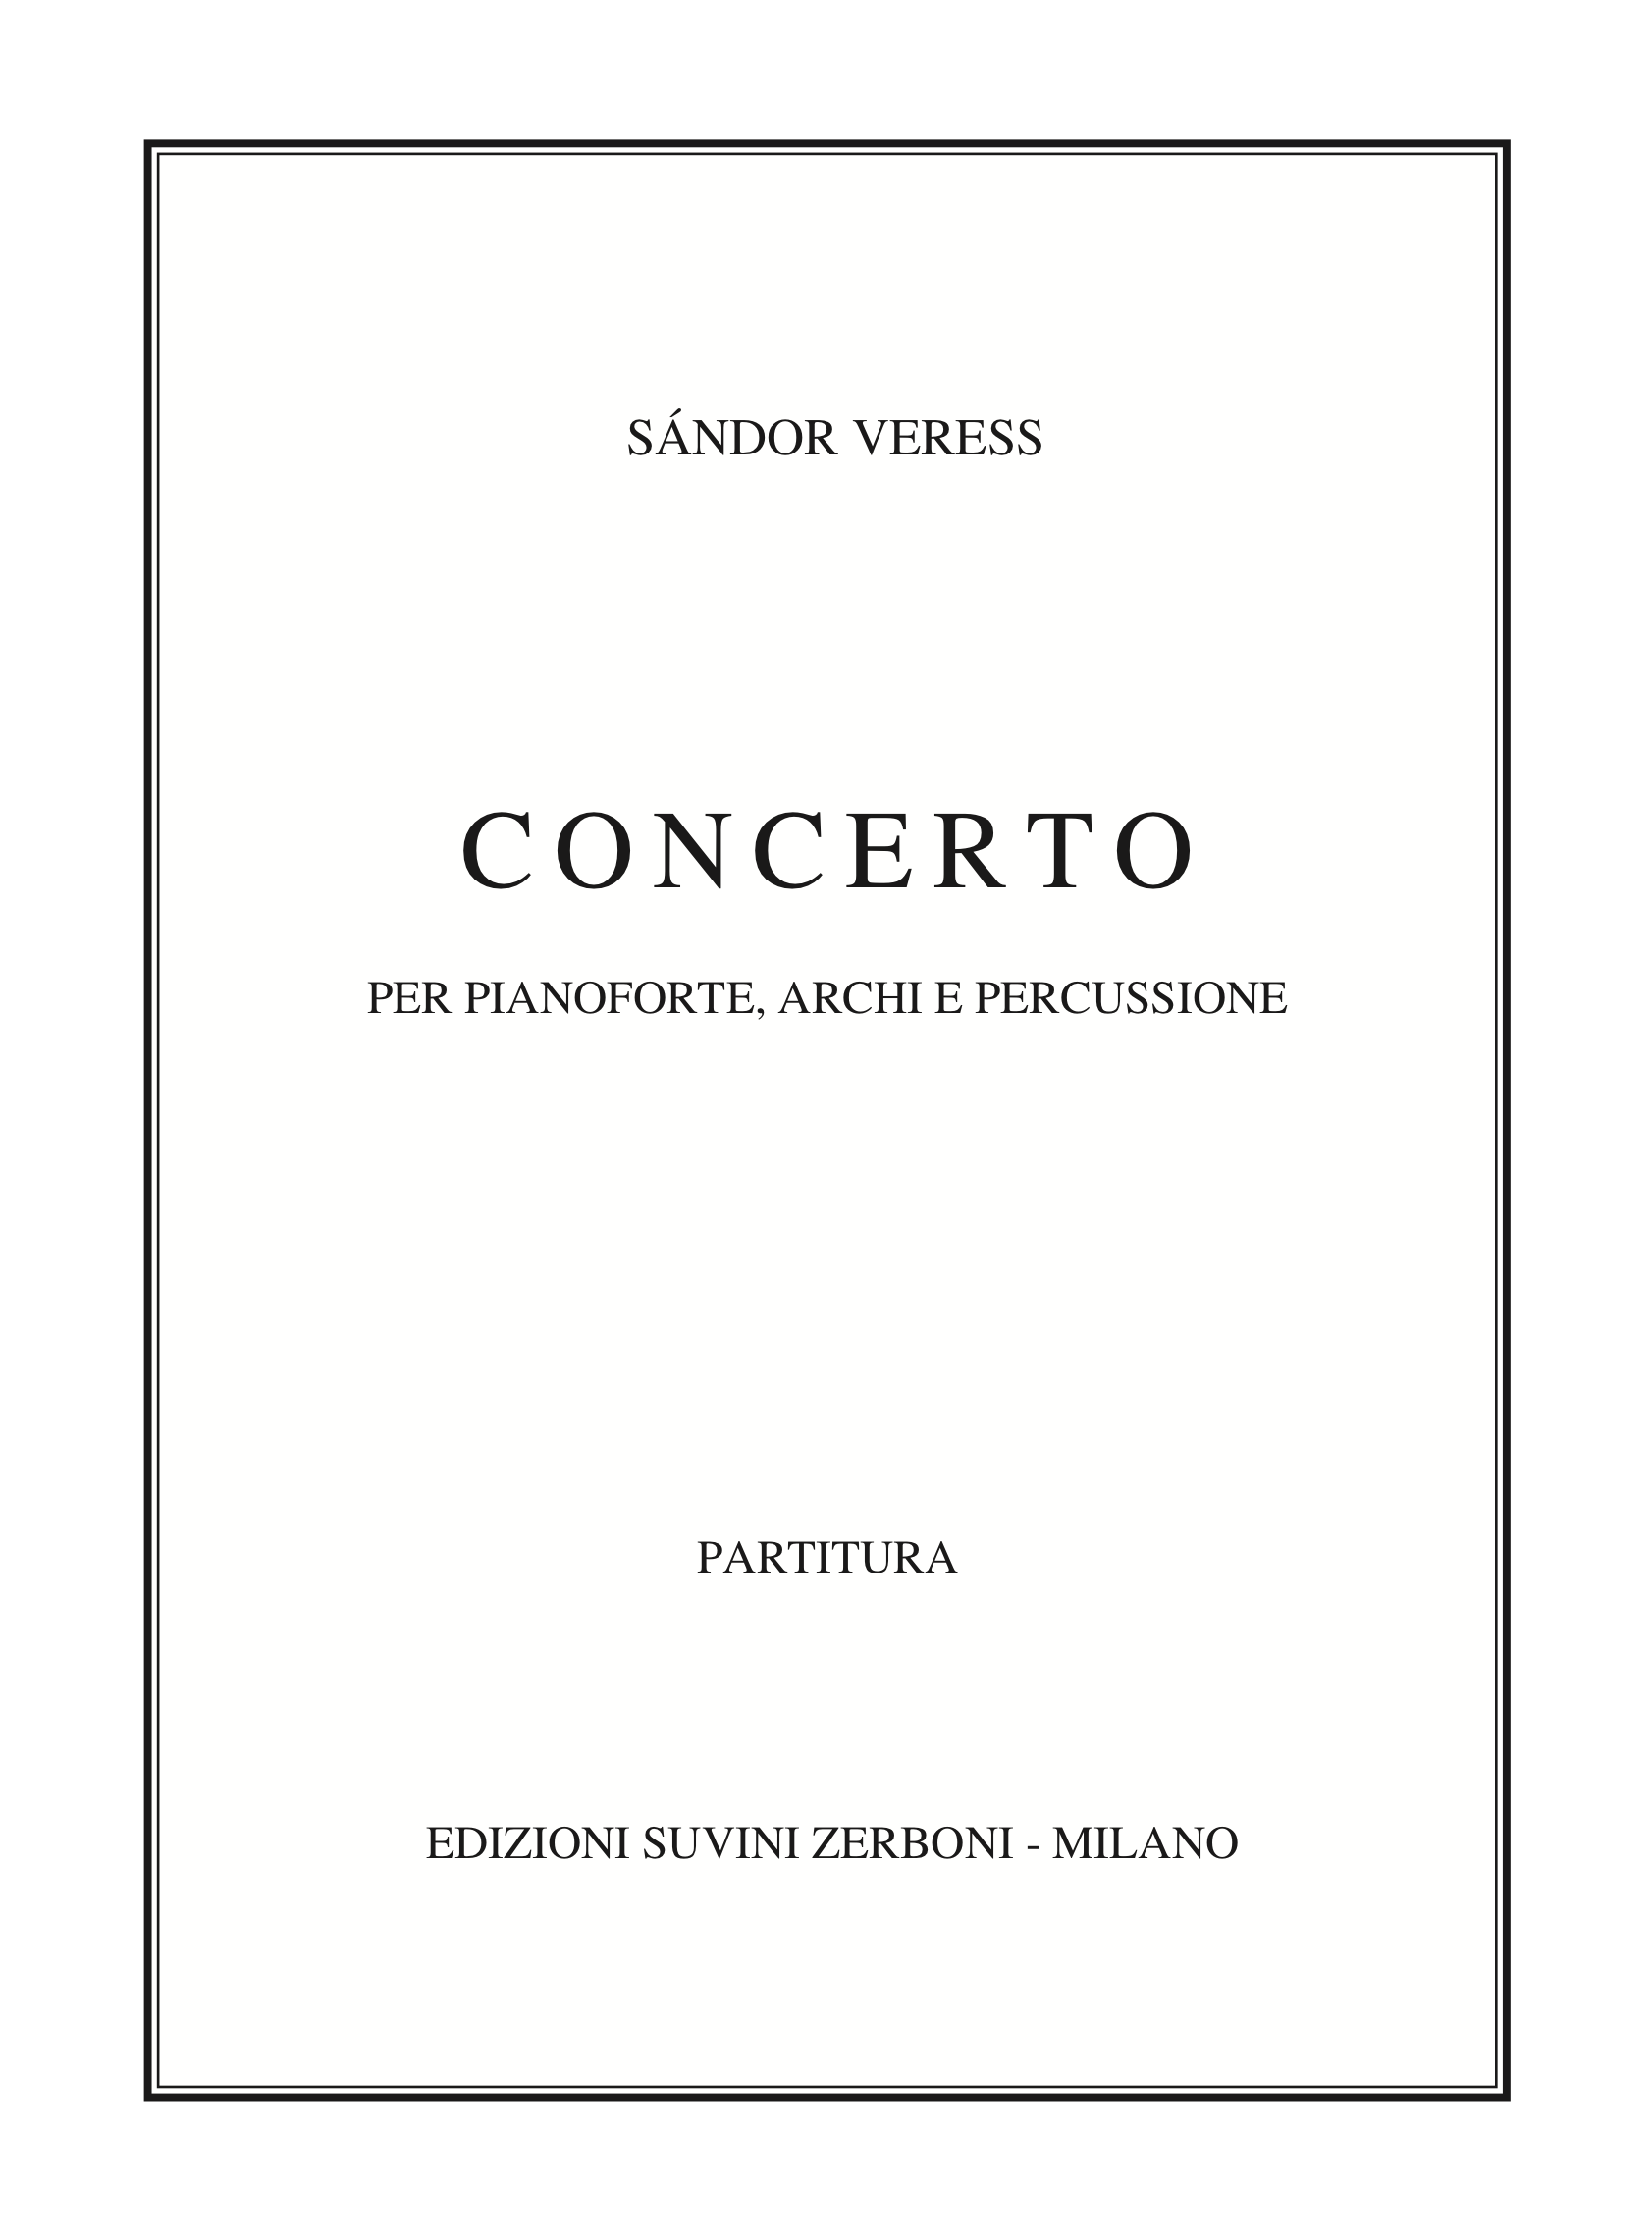 Concerto per pianoforte archi e percussione_Veress 1